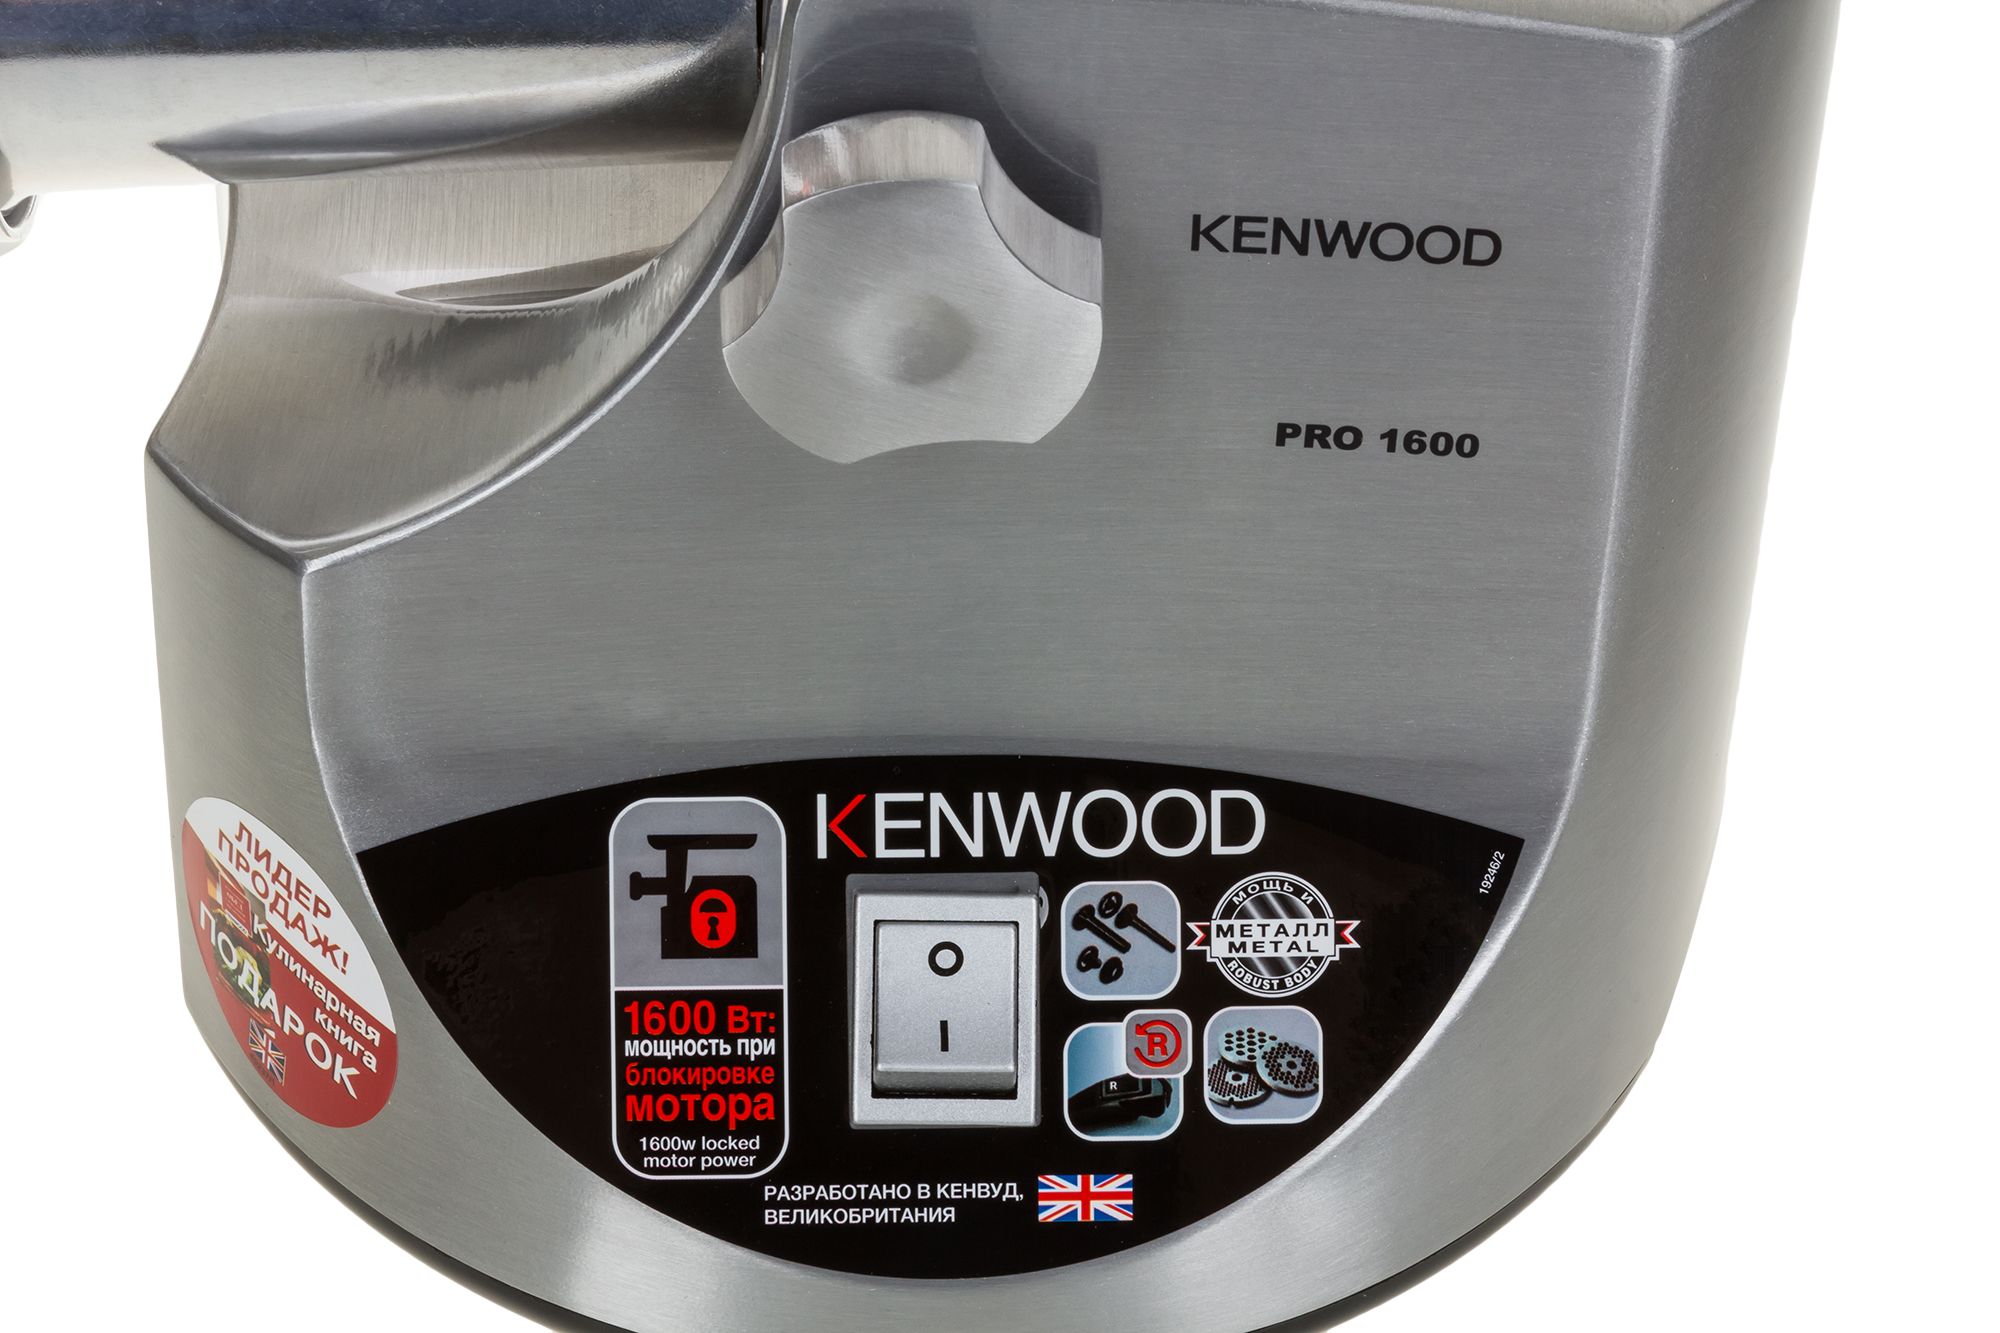 Мясорубка kenwood pro 1600